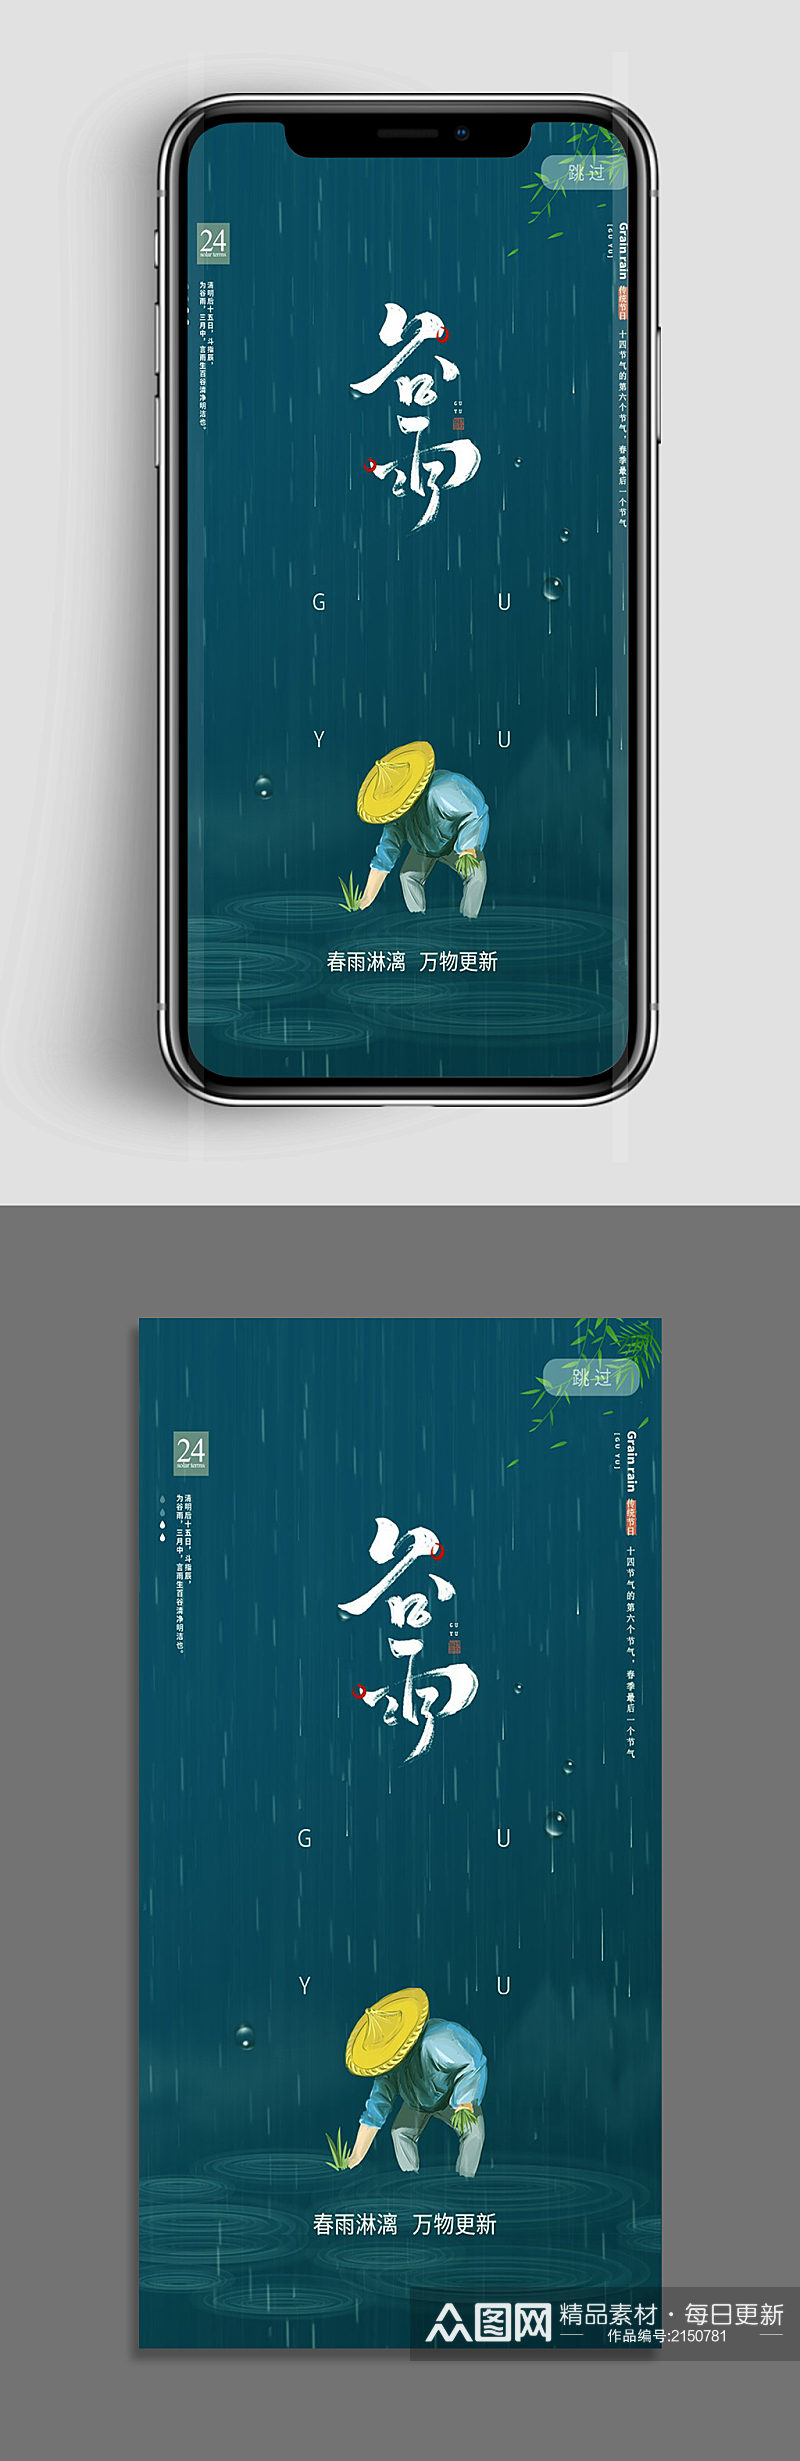 创意质感简约谷雨节气手机海报设计素材